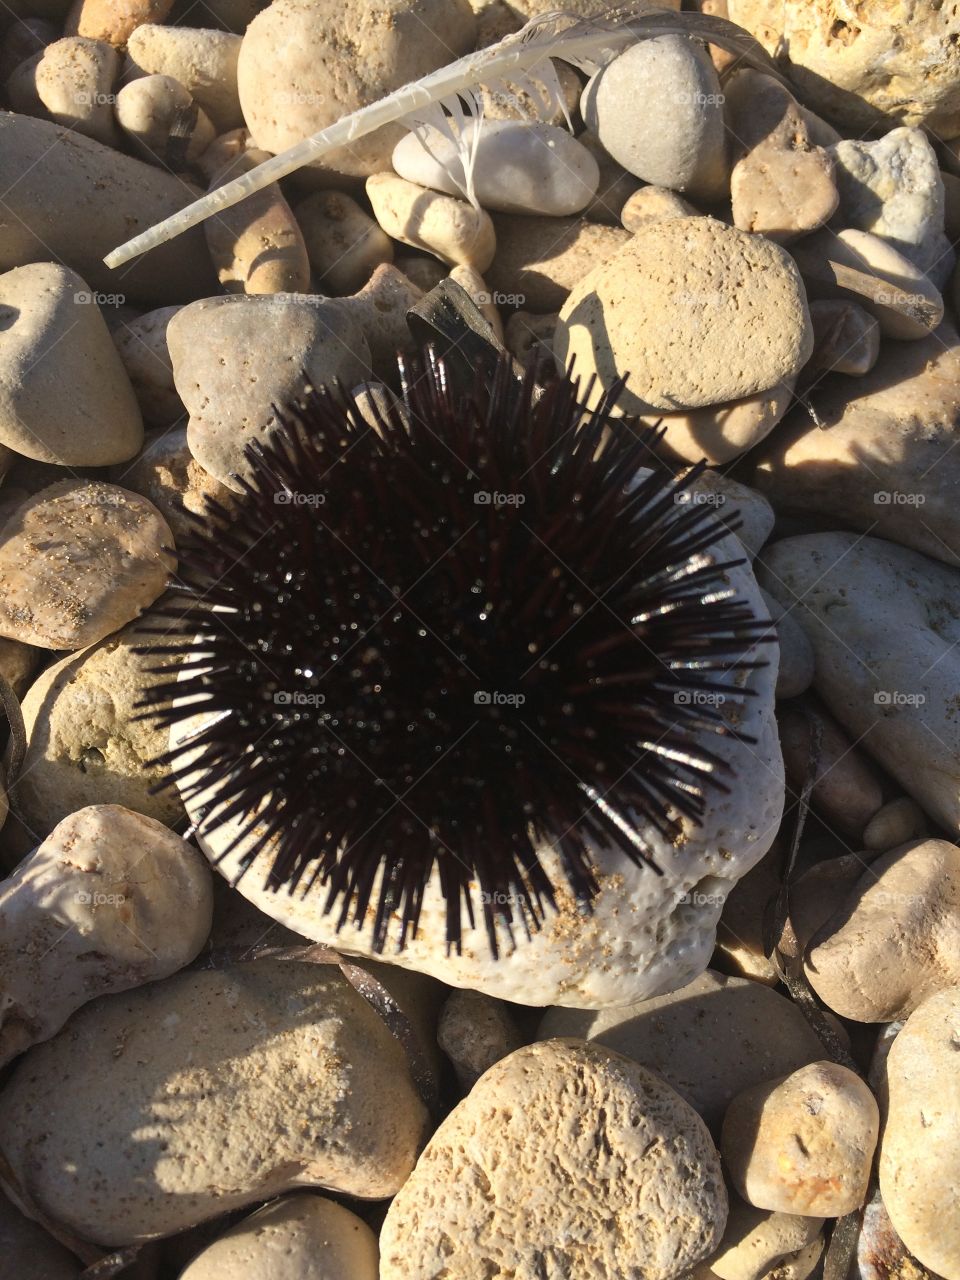 Sea urchin in Crete